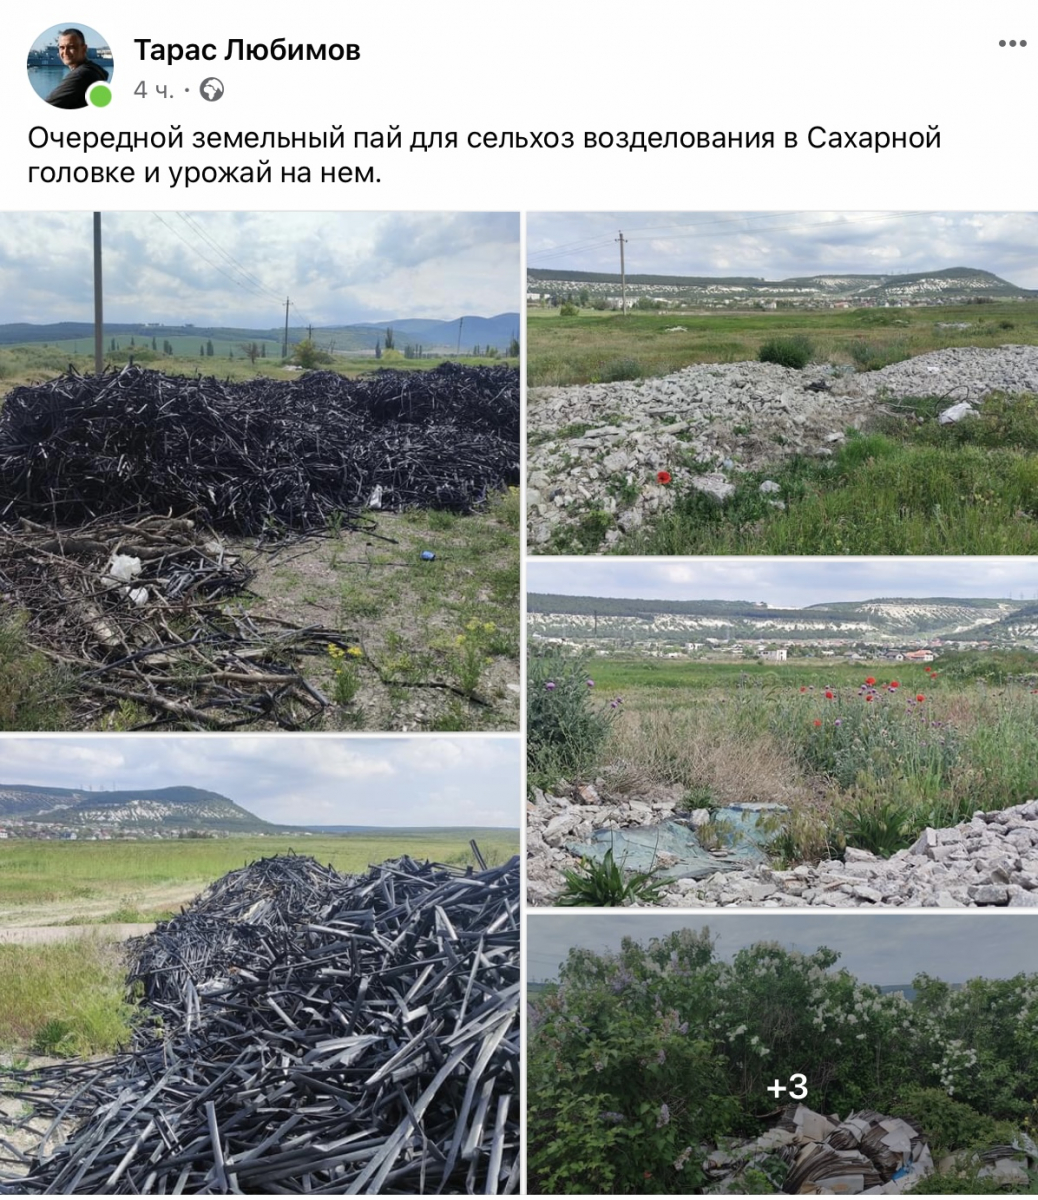 севастополь севсети погода природа мусор отходы нарушение